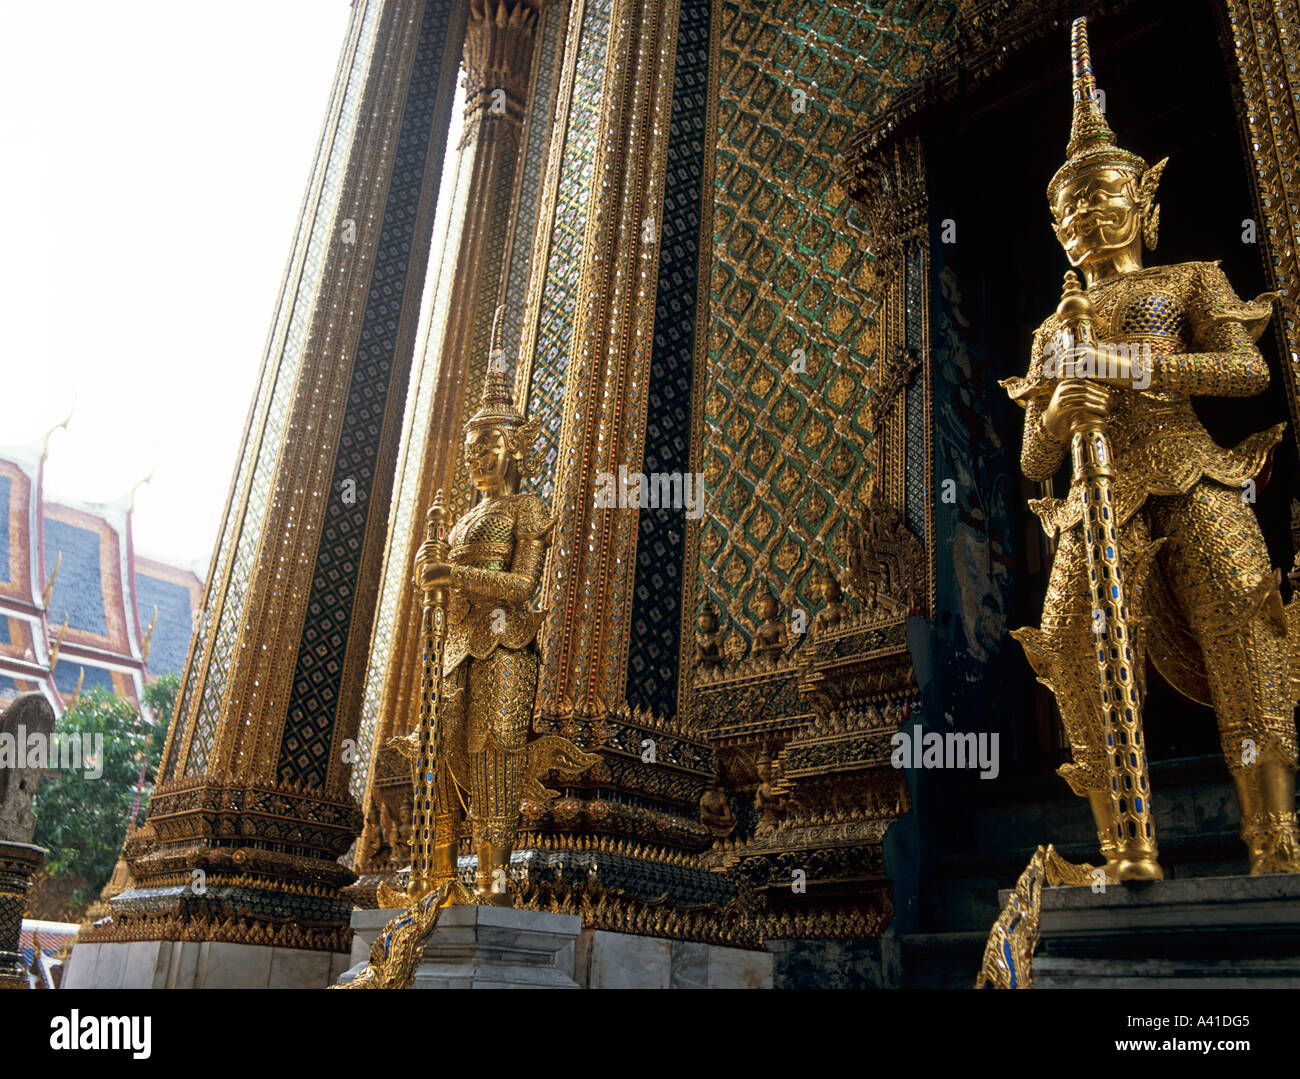 Golden Buddha Wat Phra Keo en dehors des Gardiens du Temple du Bouddha Émeraude grand palace Bangkok Thailande Asie du sud-est Banque D'Images